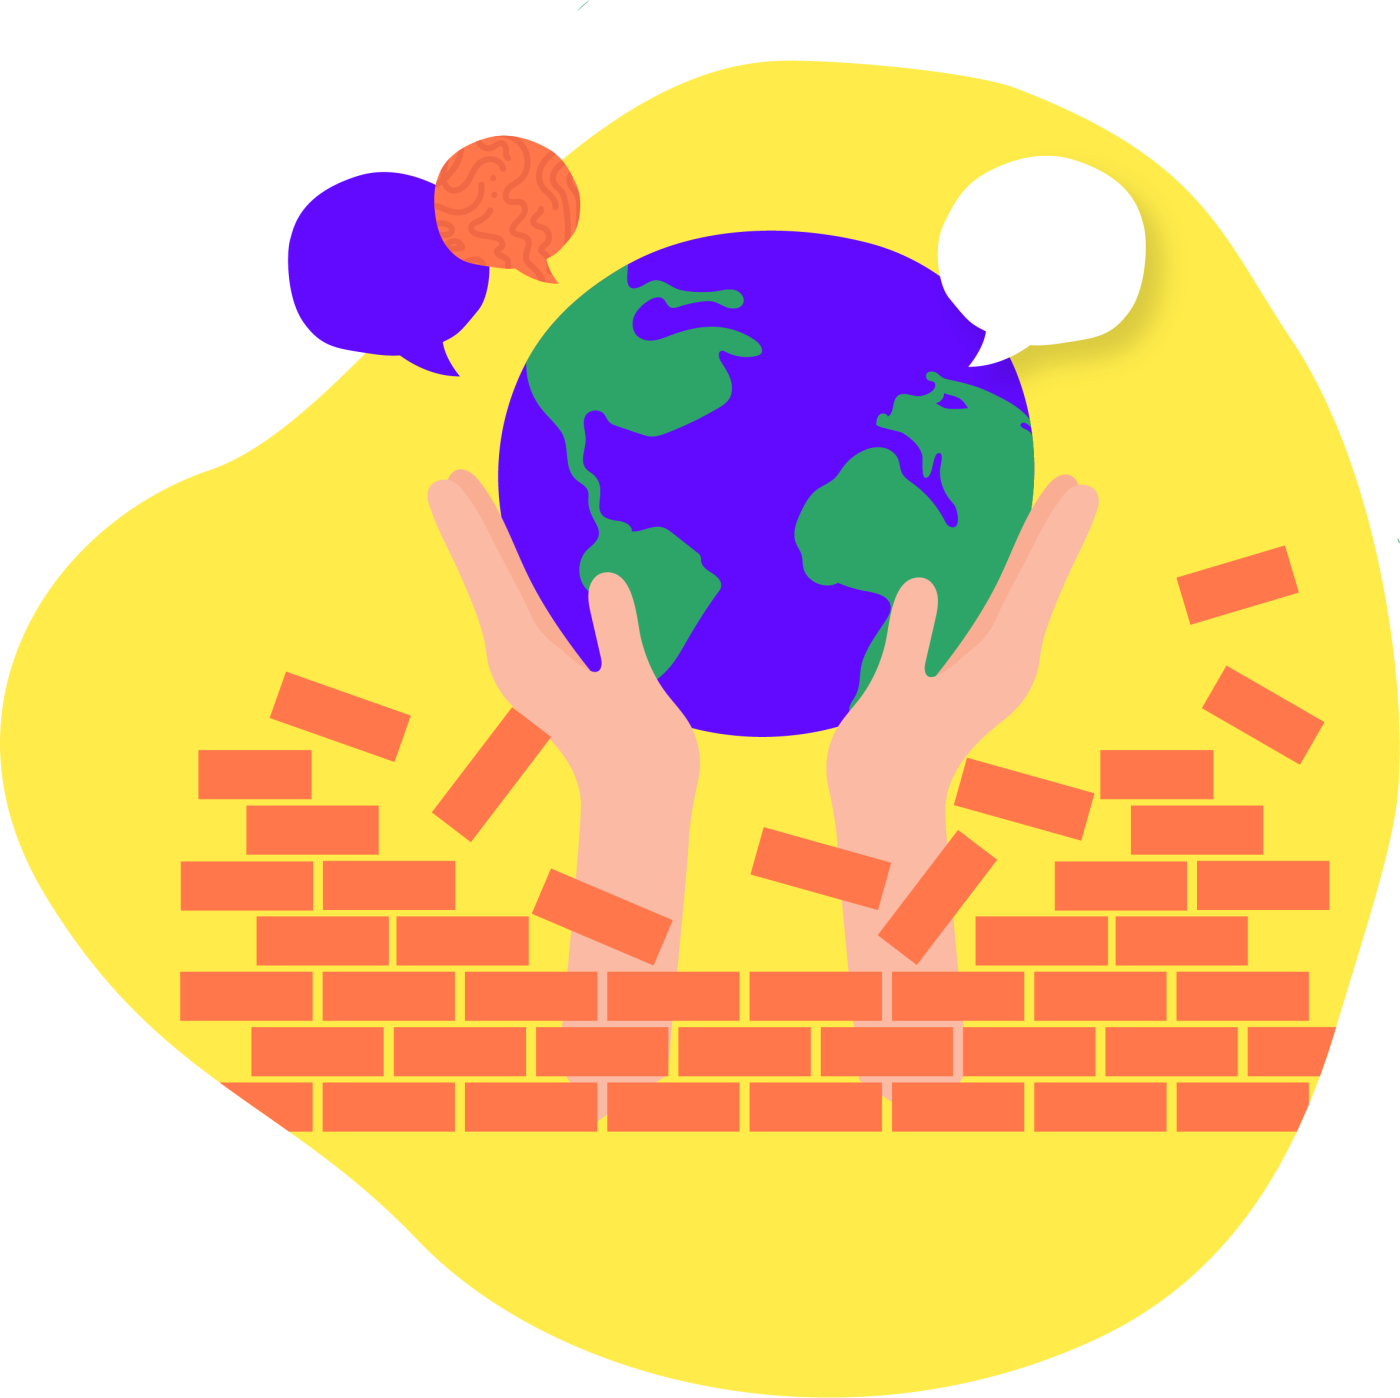 Deux mains surgissent d’un mur de briques, tenant un globe terrestre mauve et vert d’où sortent trois bulles de dialogue.